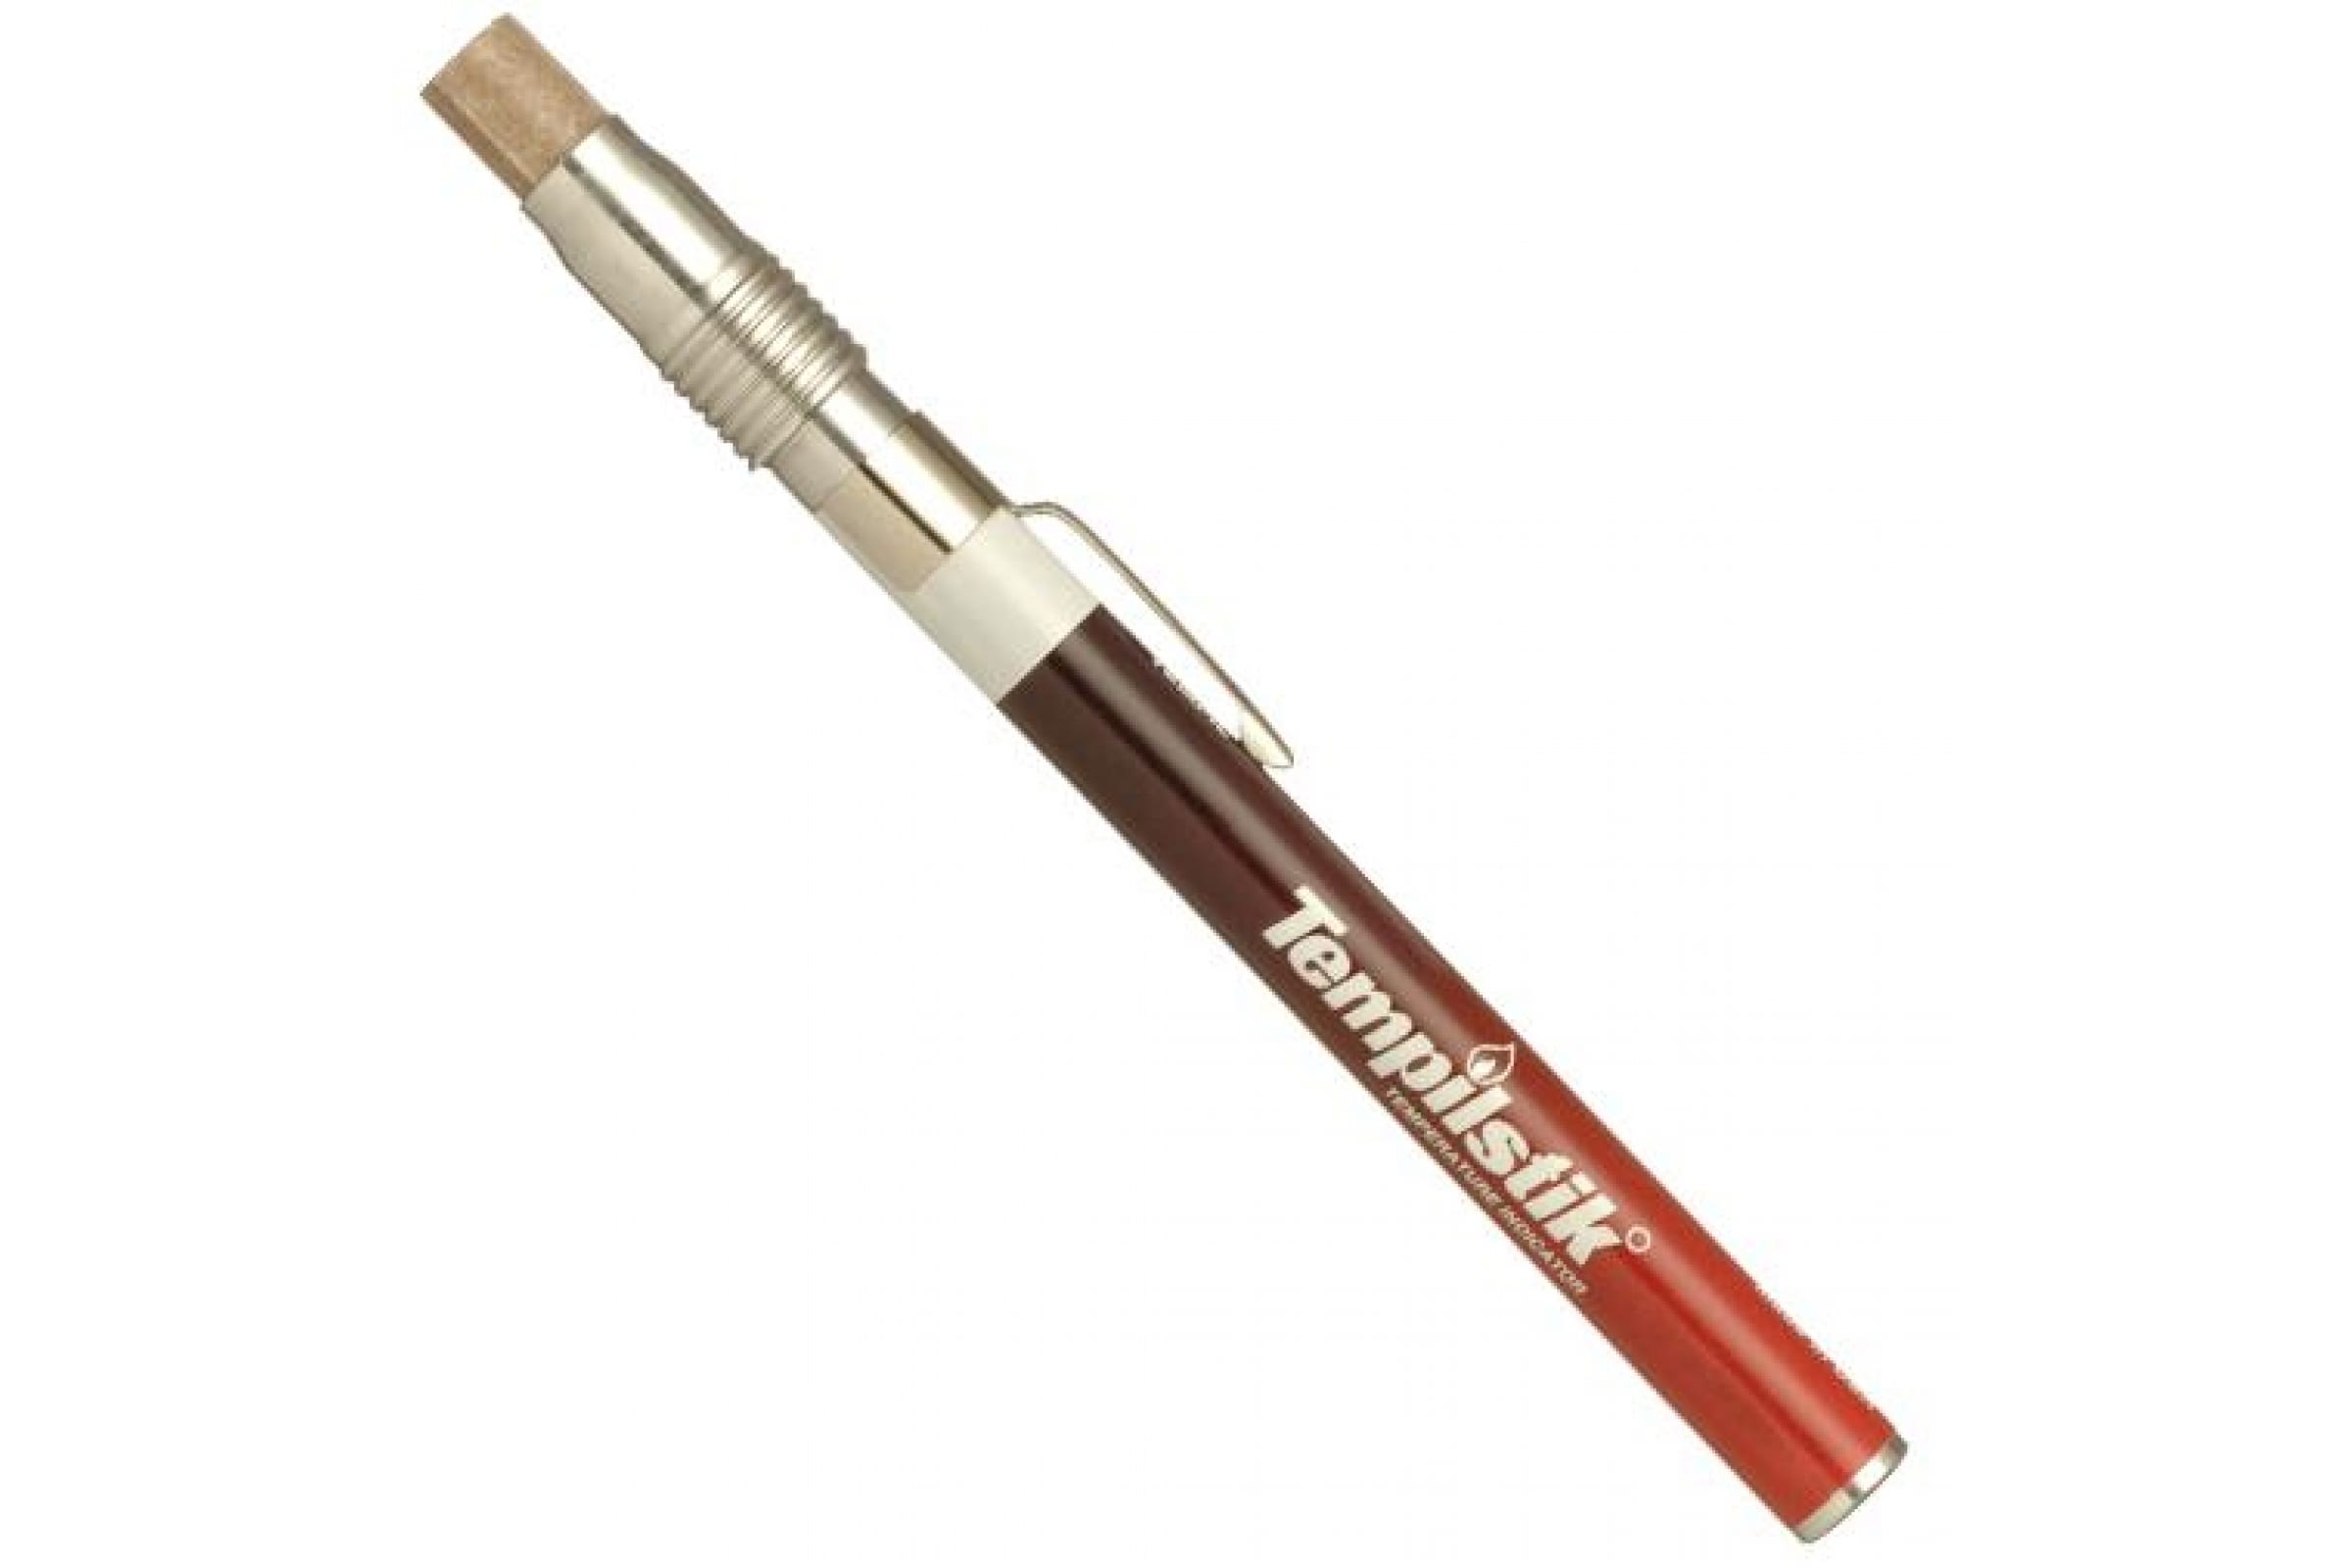 Markal Термоиндикаторный карандаш Tempilstik 150C 28318 термоиндикаторный карандаш markal tempilstik с держателем 80°c